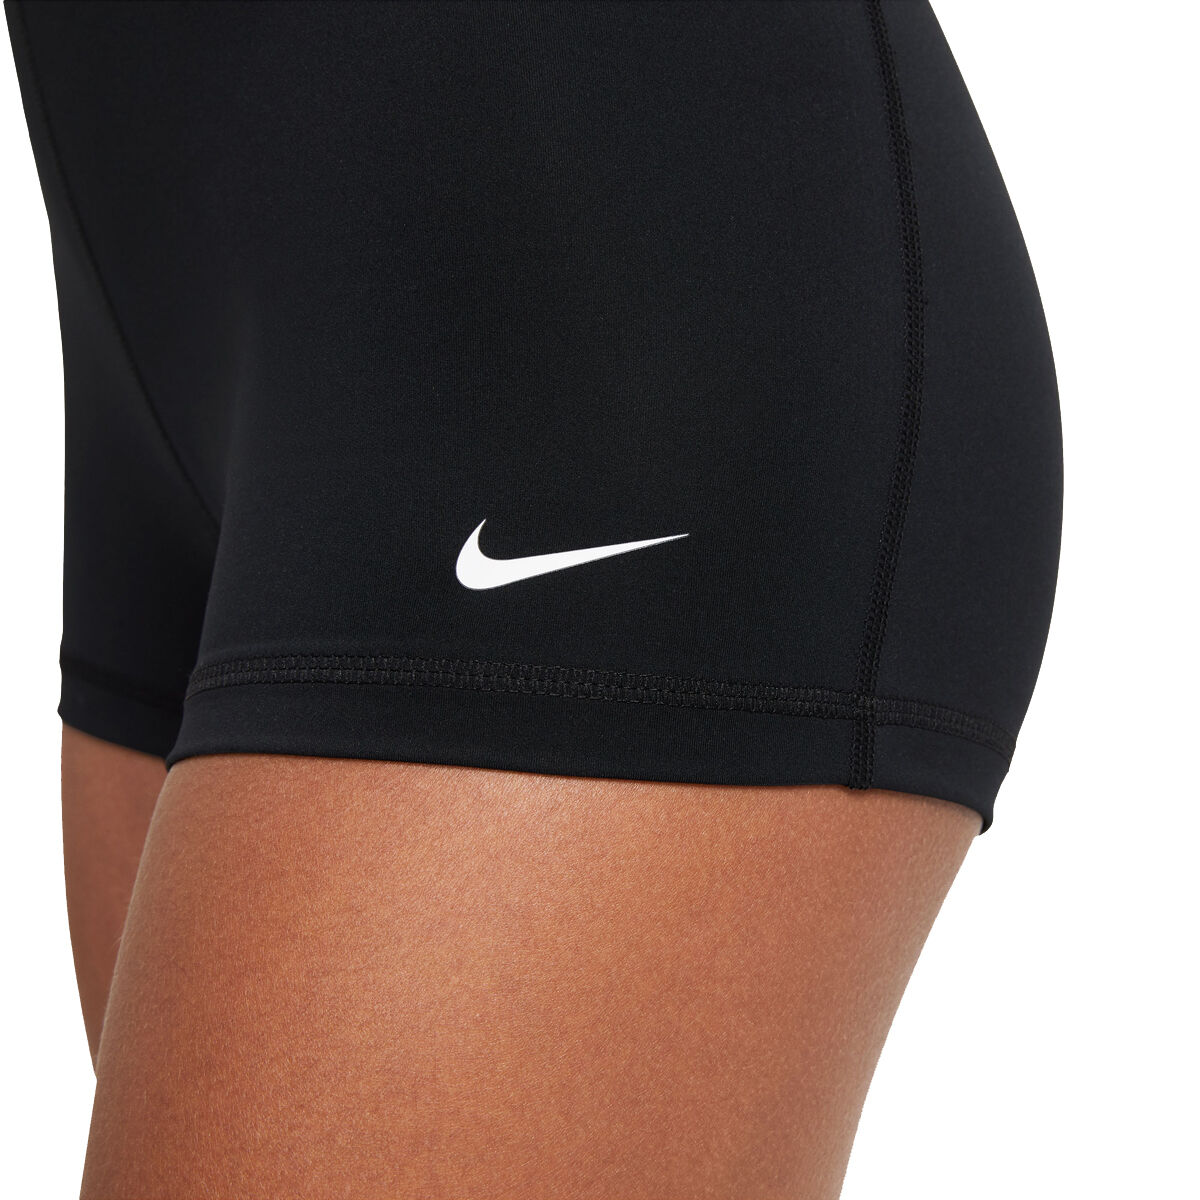 Womens Nike Shorts, Nike Pro Shorts